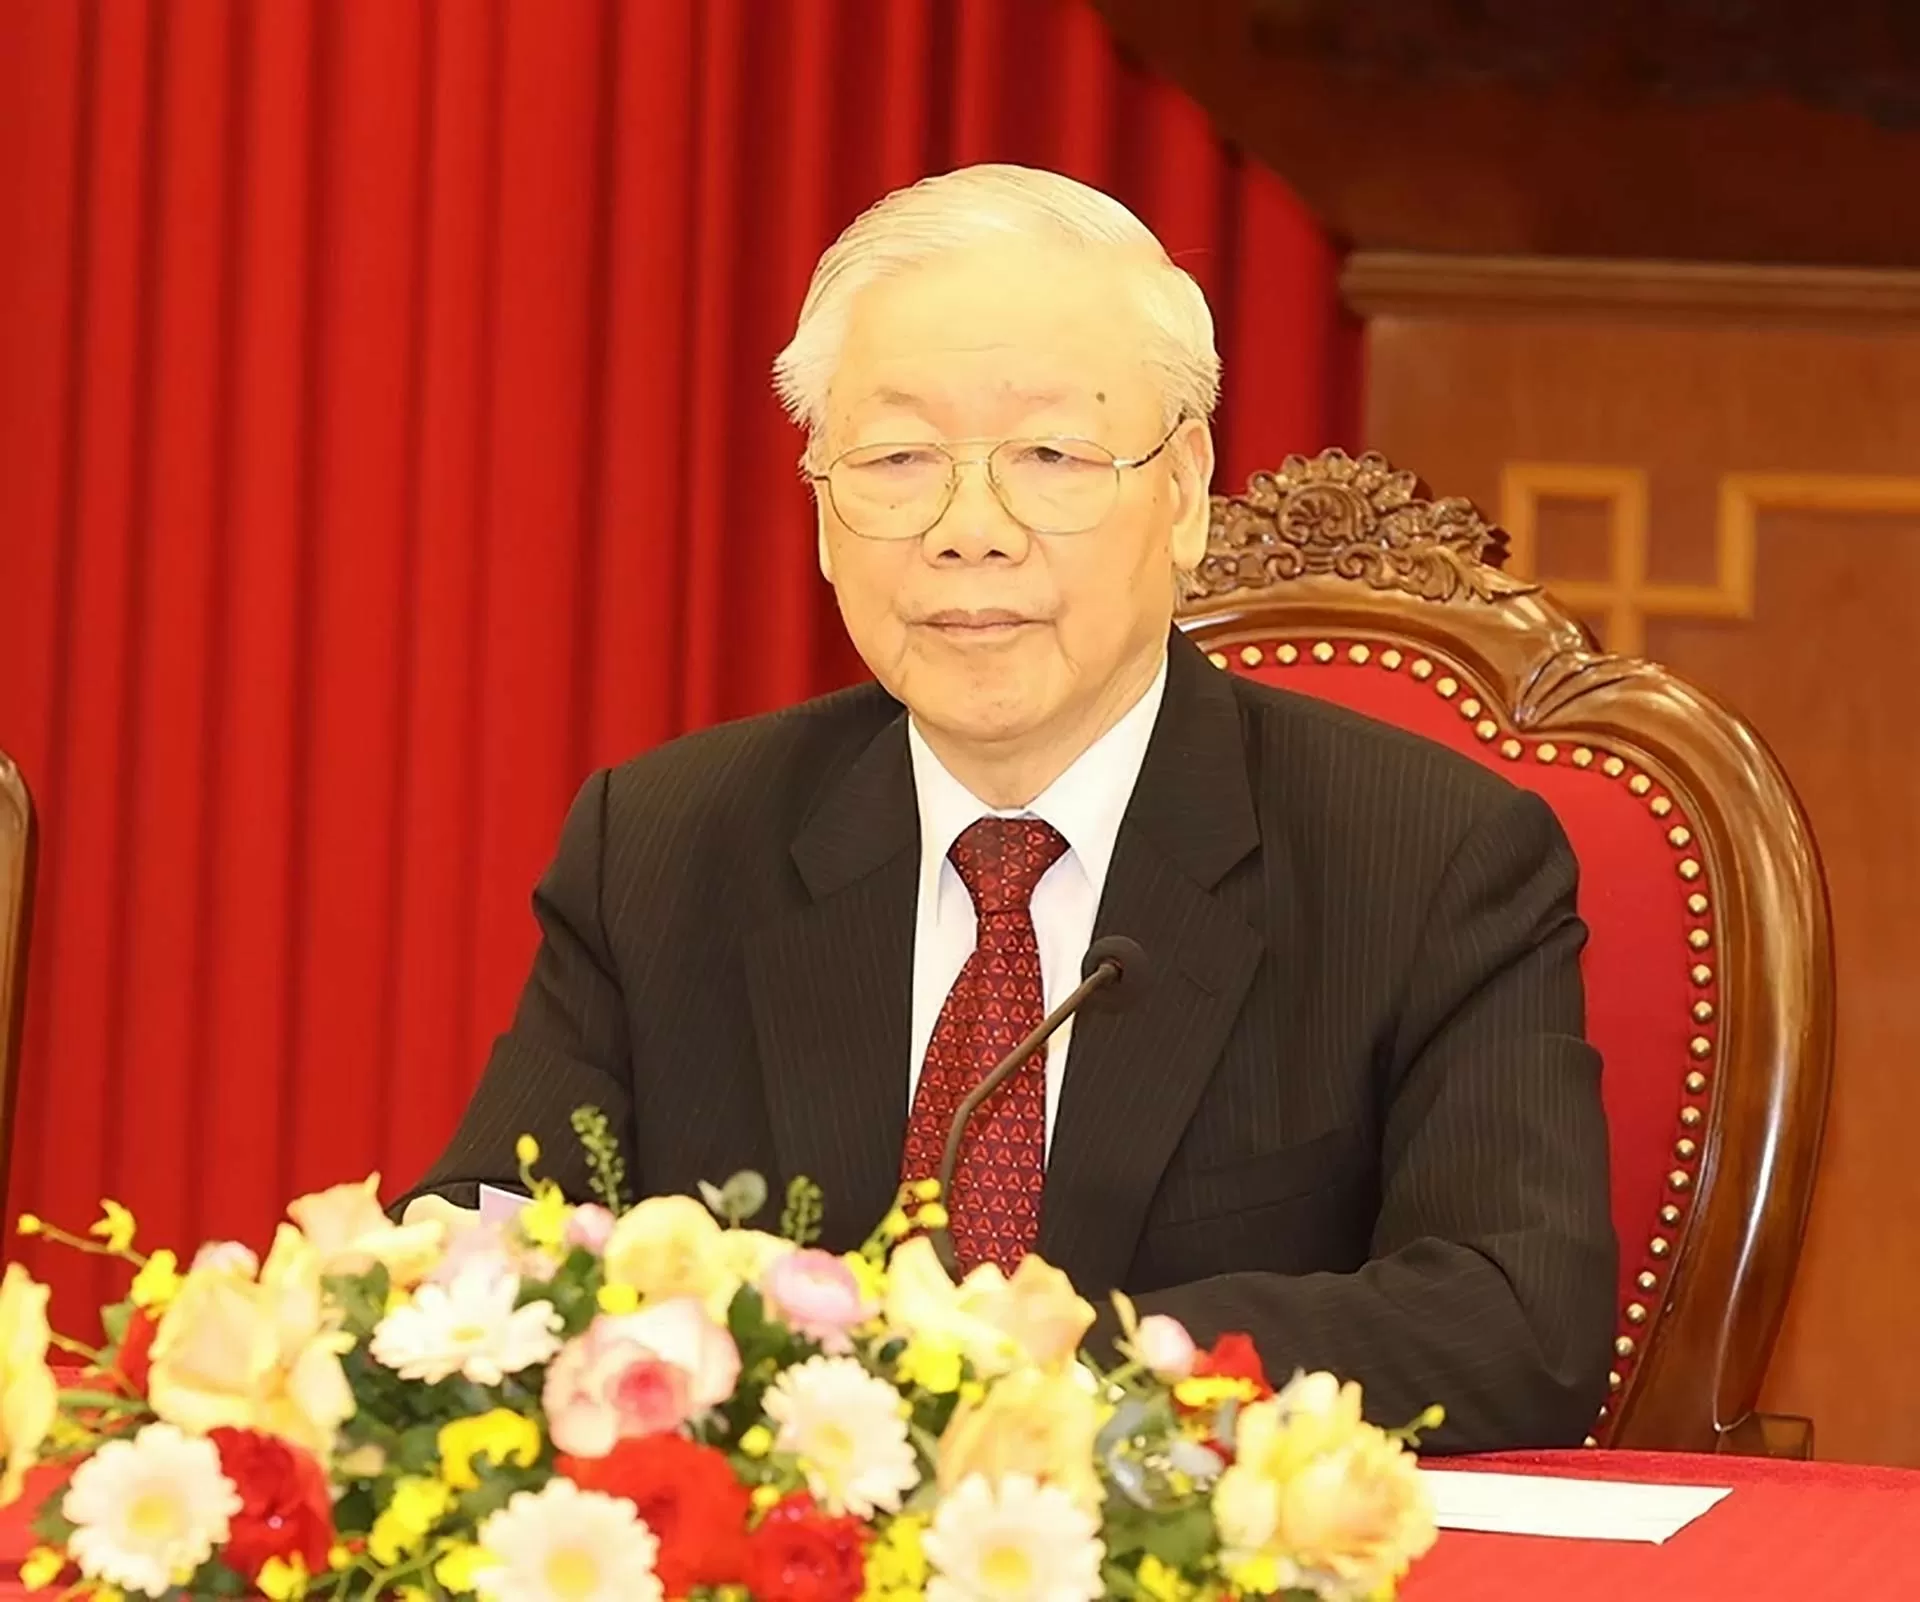 Bộ Chính trị thông báo tình hình sức khỏe của Tổng Bí thư Nguyễn Phú Trọng